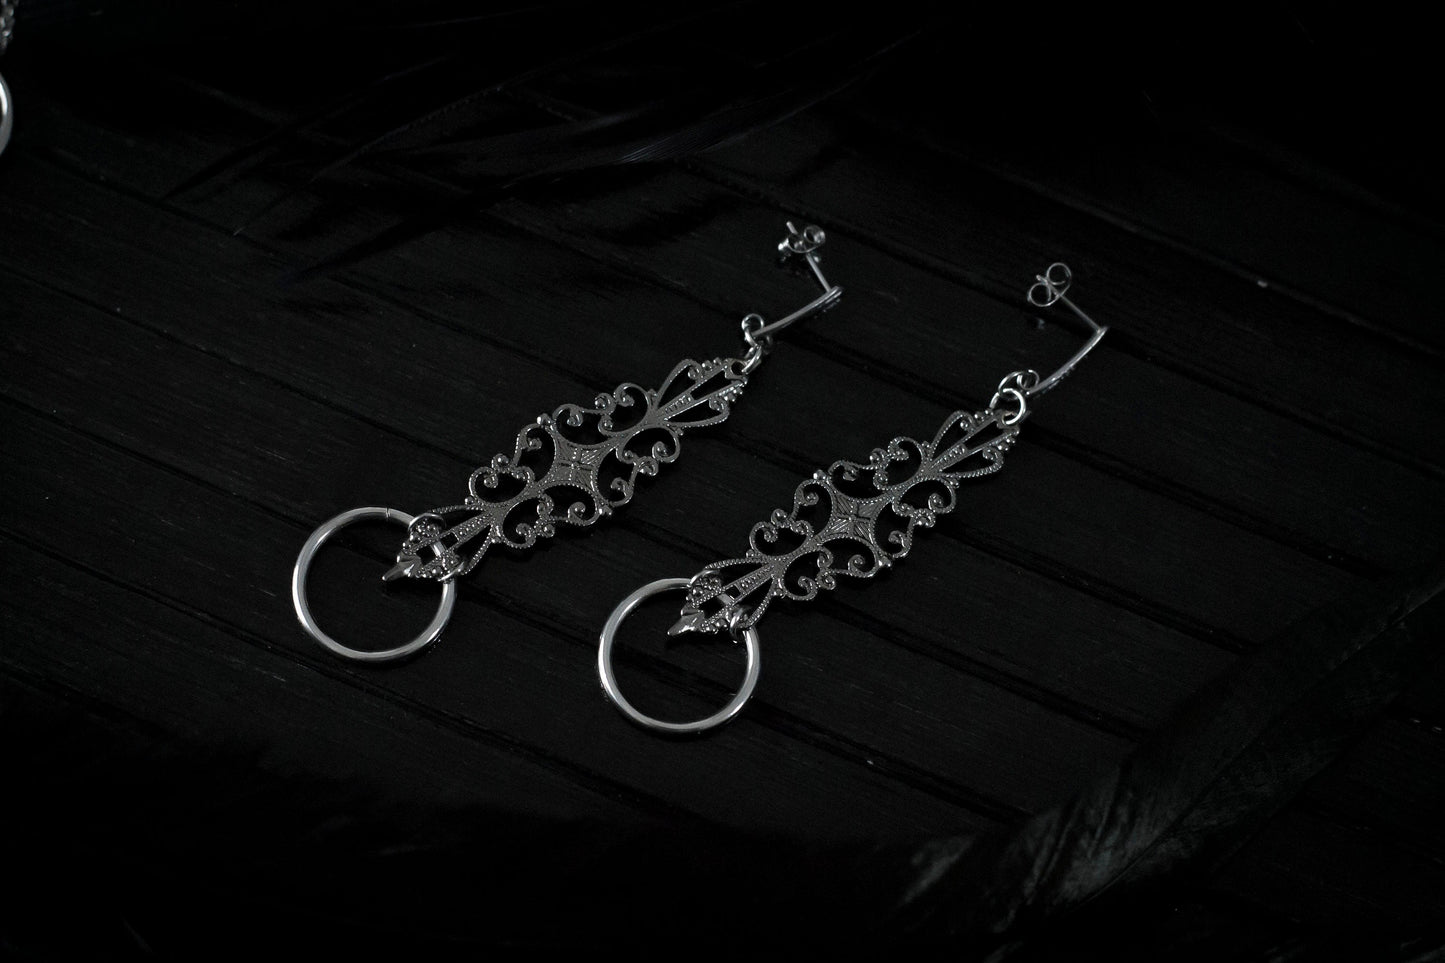 Jewelry Set: Necklace + Earrings